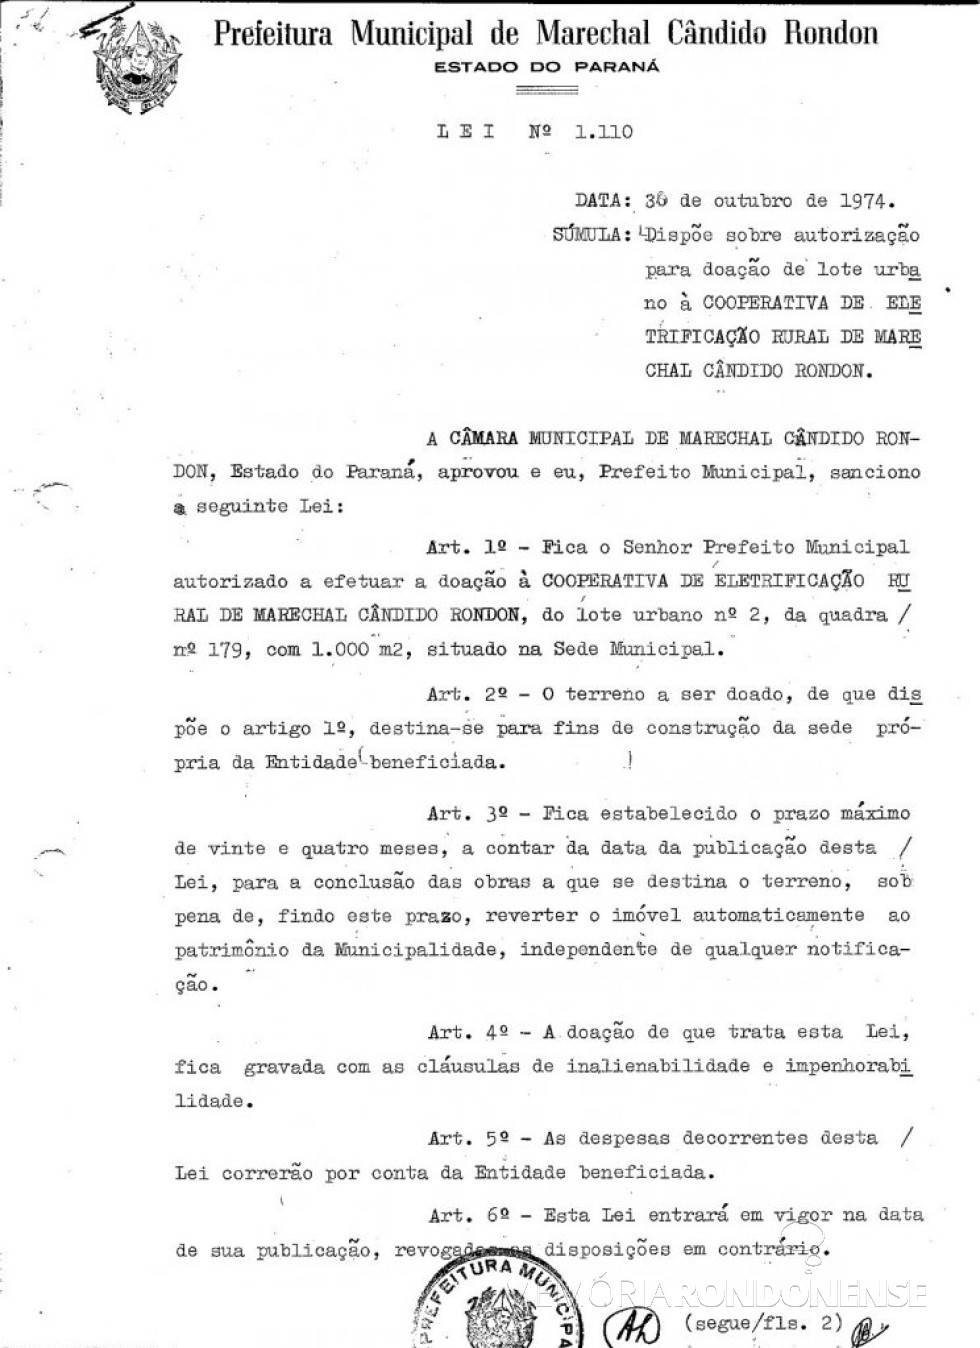 || Cópia da Lei Municipal nº 1.110, de Marechal Cândido Rondon, que doou um terreno para a Cooperativa de Eletrificação Rural de Marechal Cândido Rondon (CERCAR), em final de outubro de 1974.
Imagem: Acervo PM - MCR - FOTO 9 -